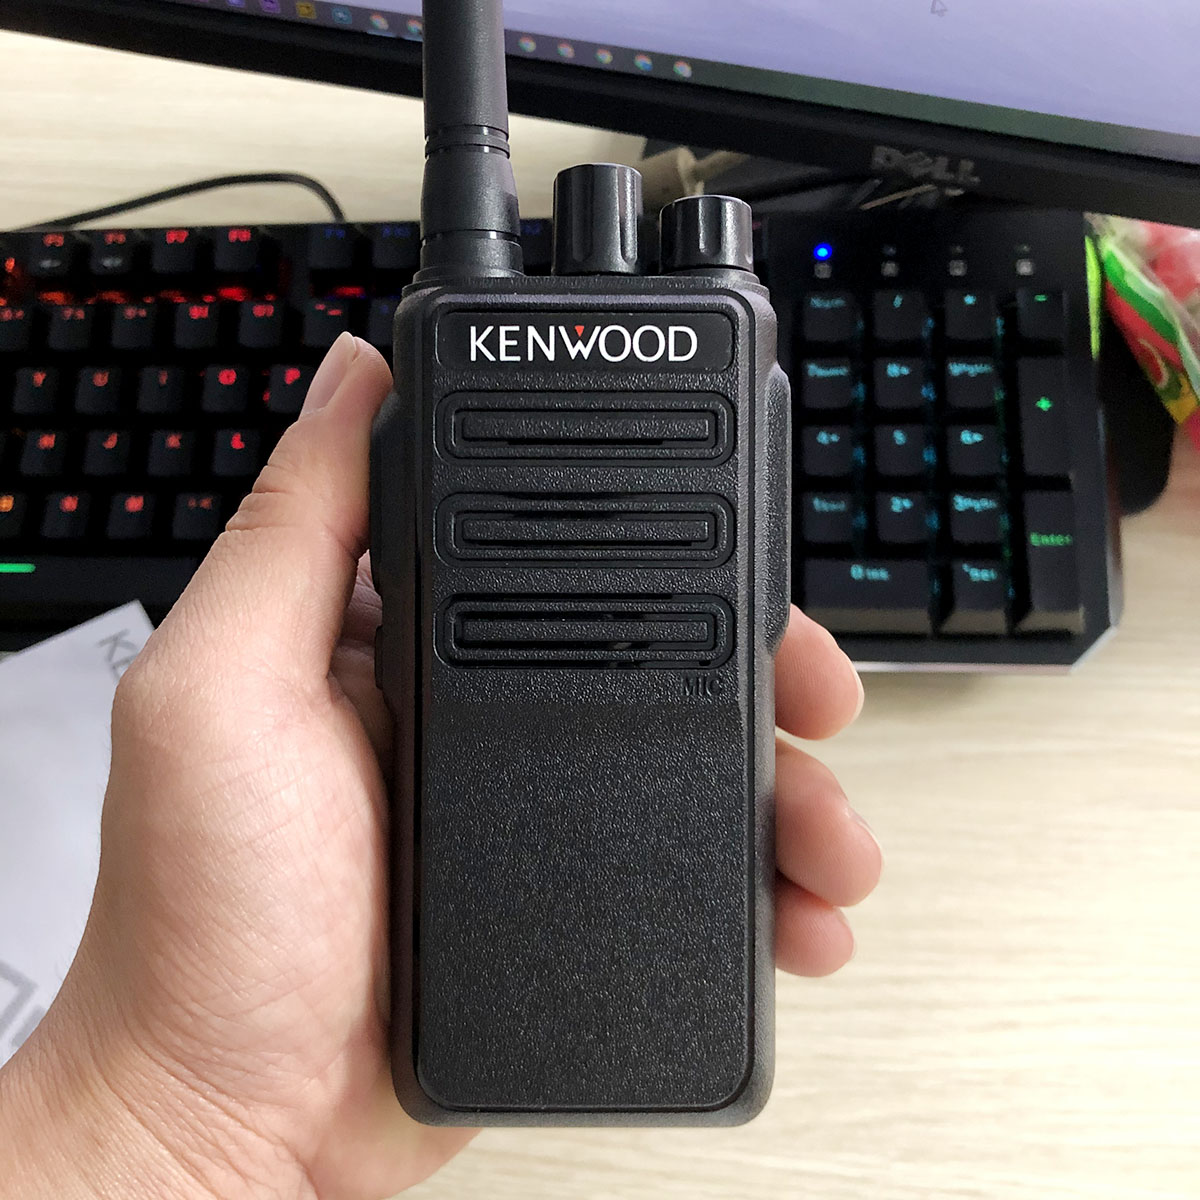 Bộ đàm Kenwood NX-450 kèm tai nghe Kenwood cao cấp | Bộ đàm dung lượng pin lớn, công suất phát cao – Hàng nhập khẩu